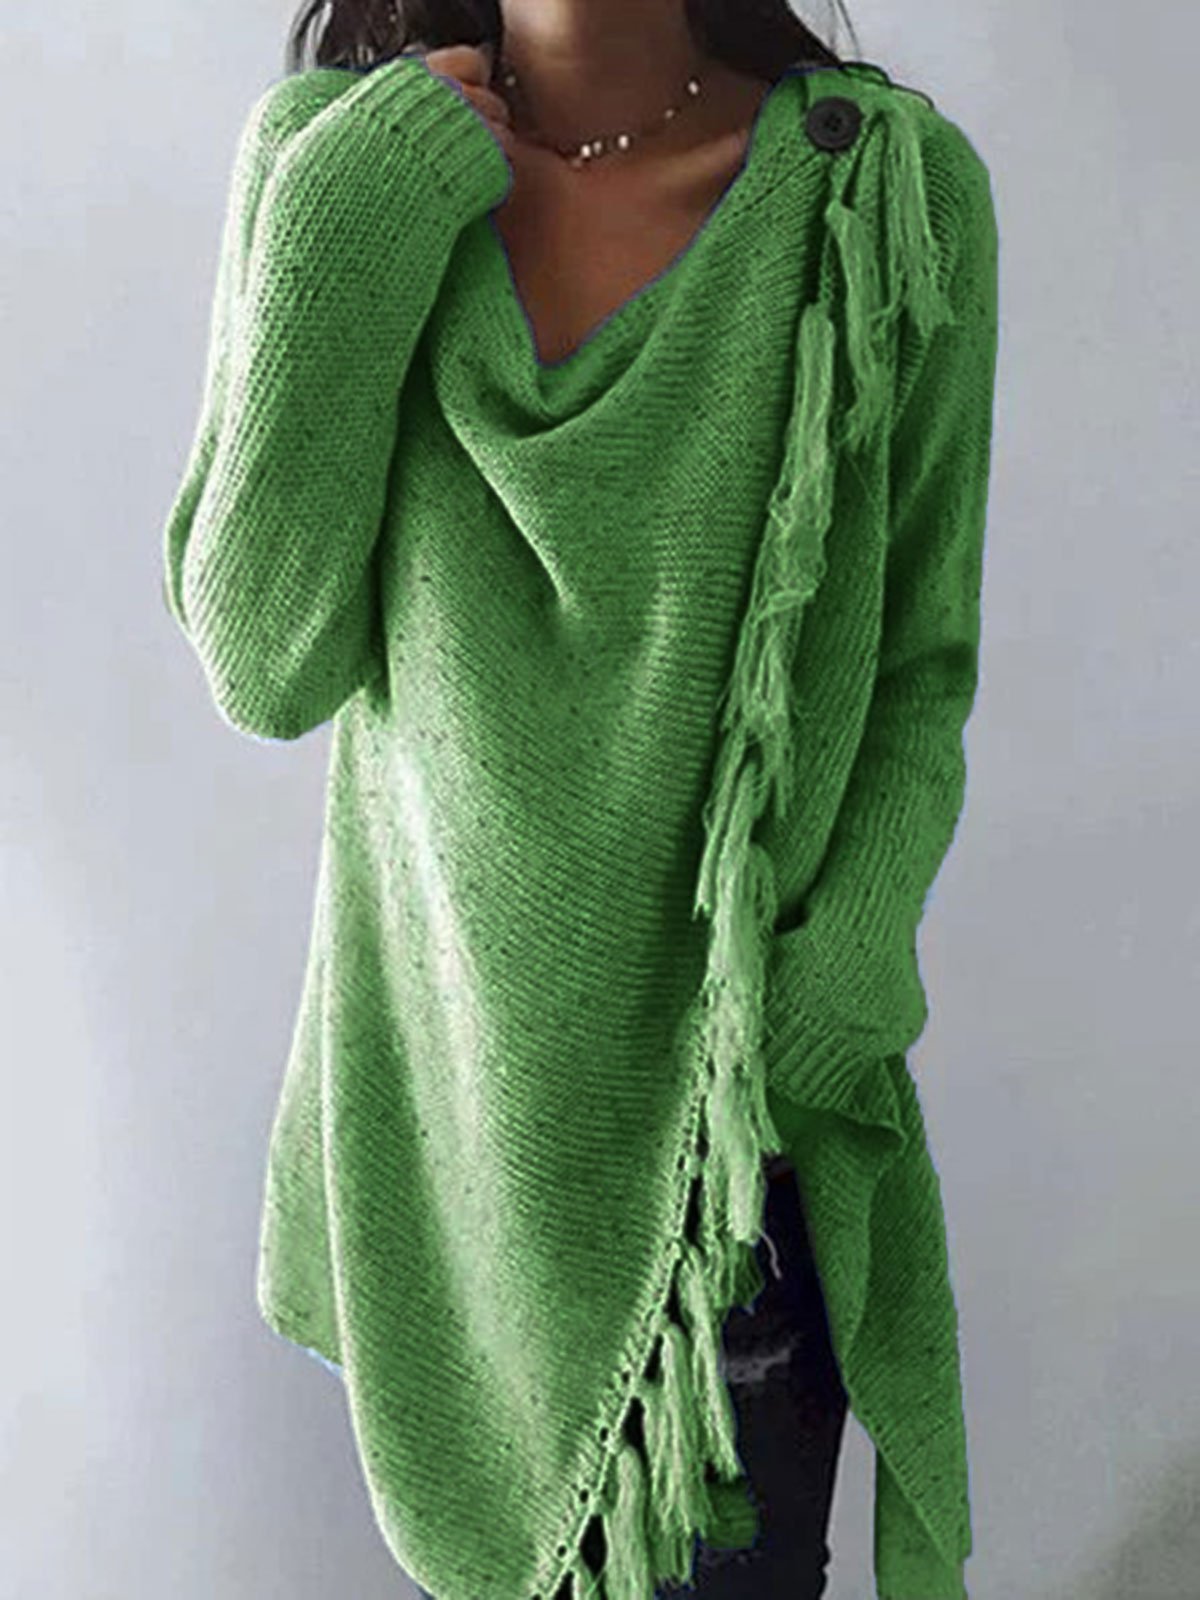 Wool/knitting Casual Loosen Blouses&shirts